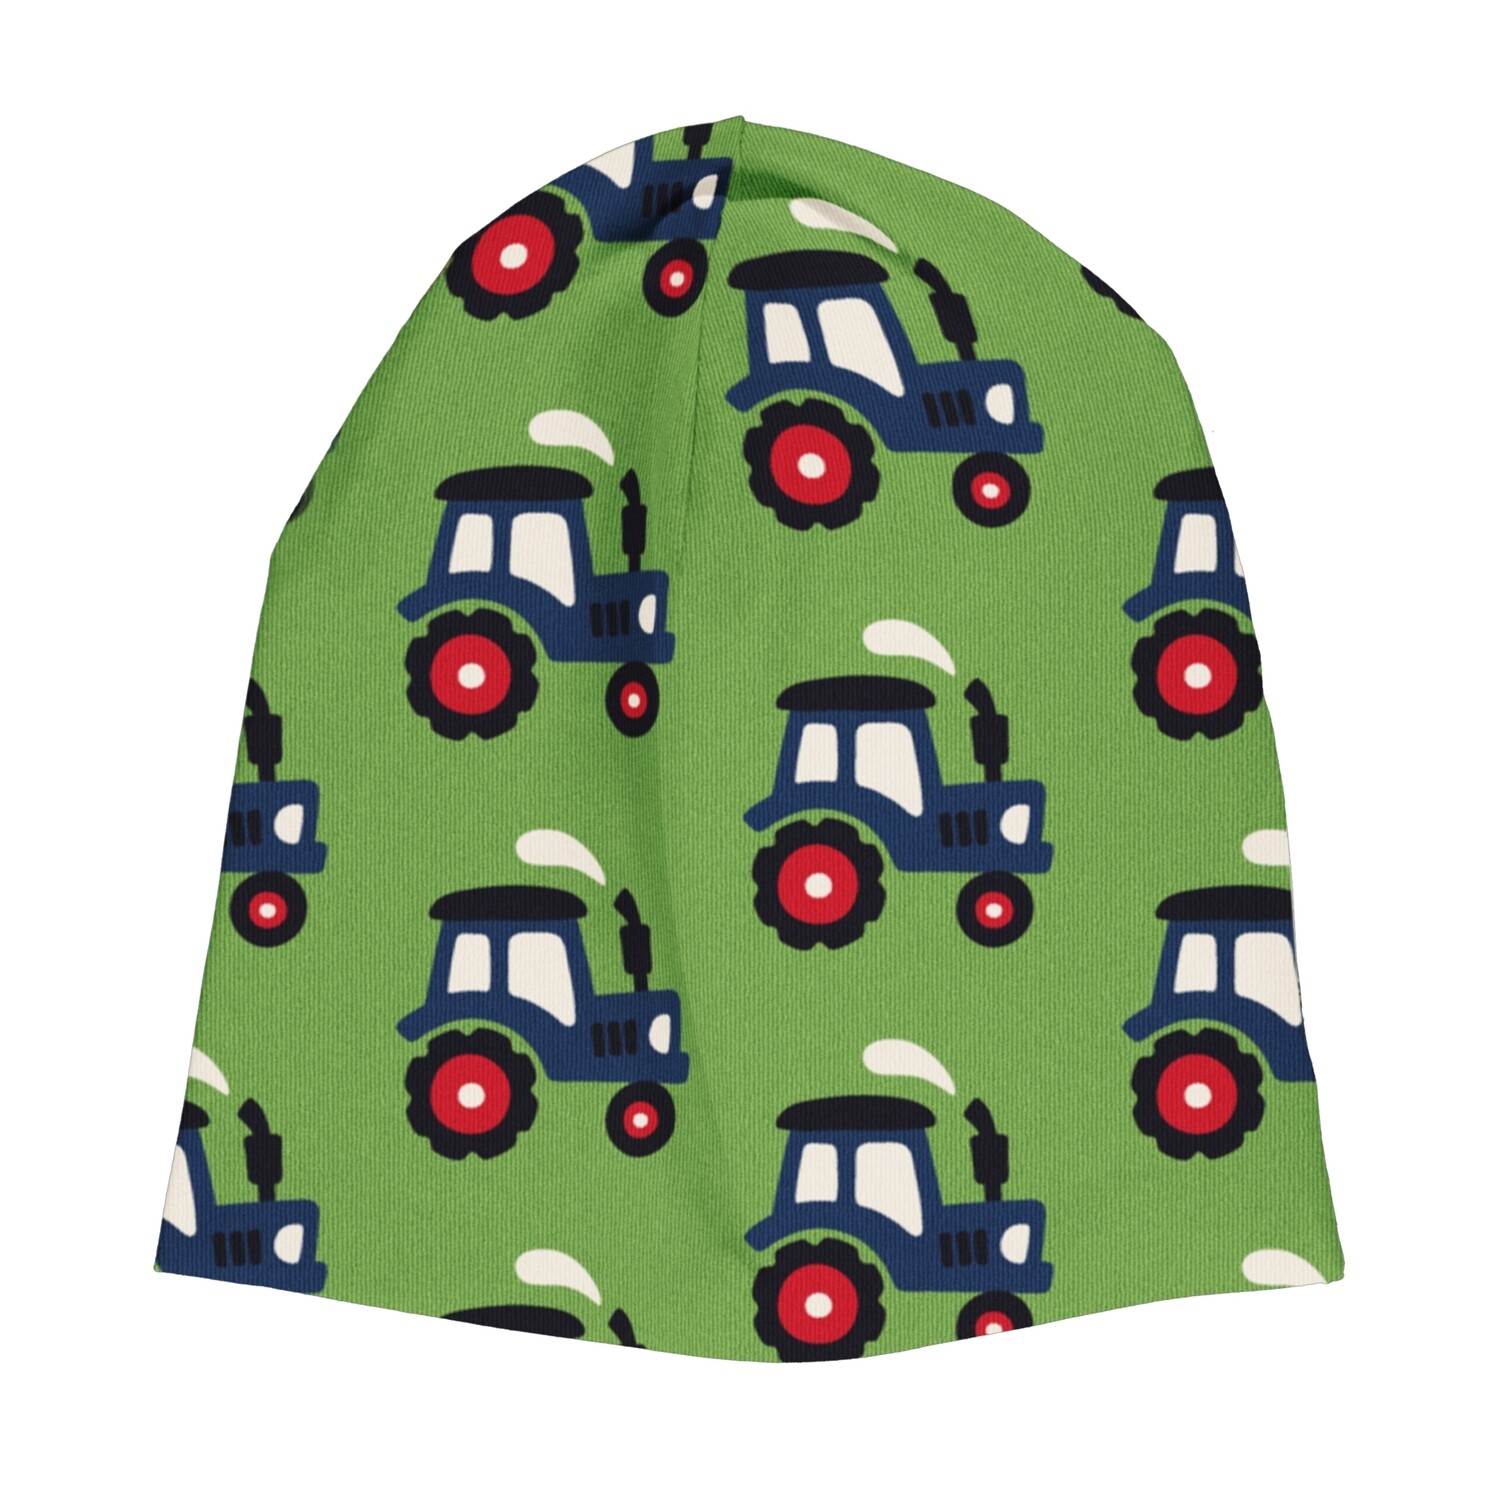 Maxomorra Tractor Beany  Hat